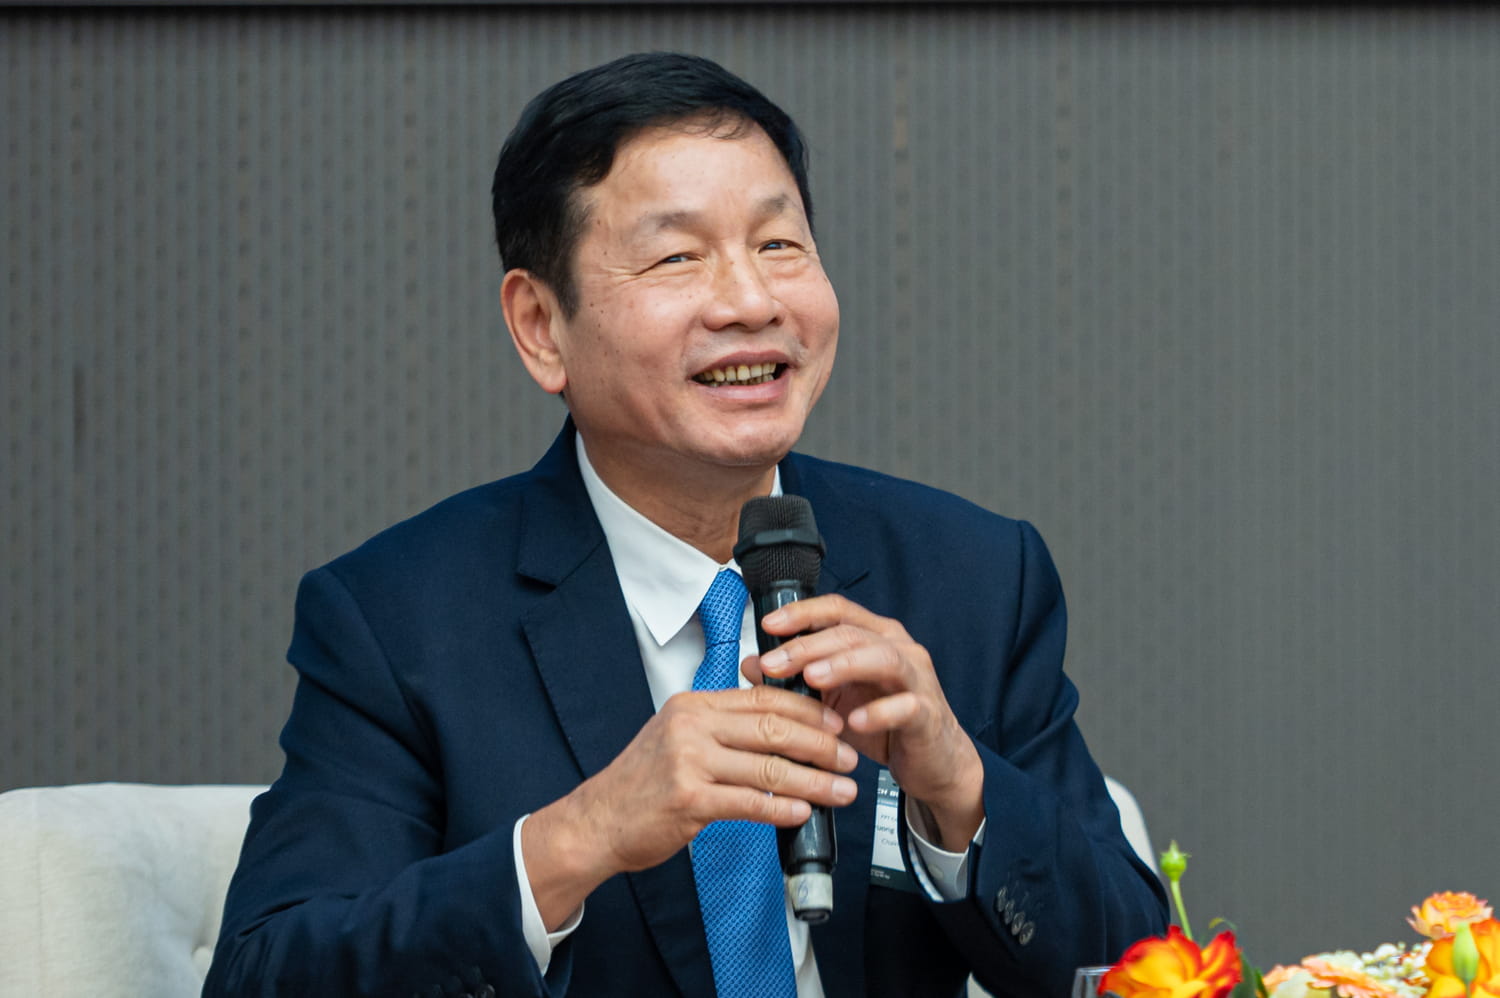 FPT Chairman Truong Gia Binh